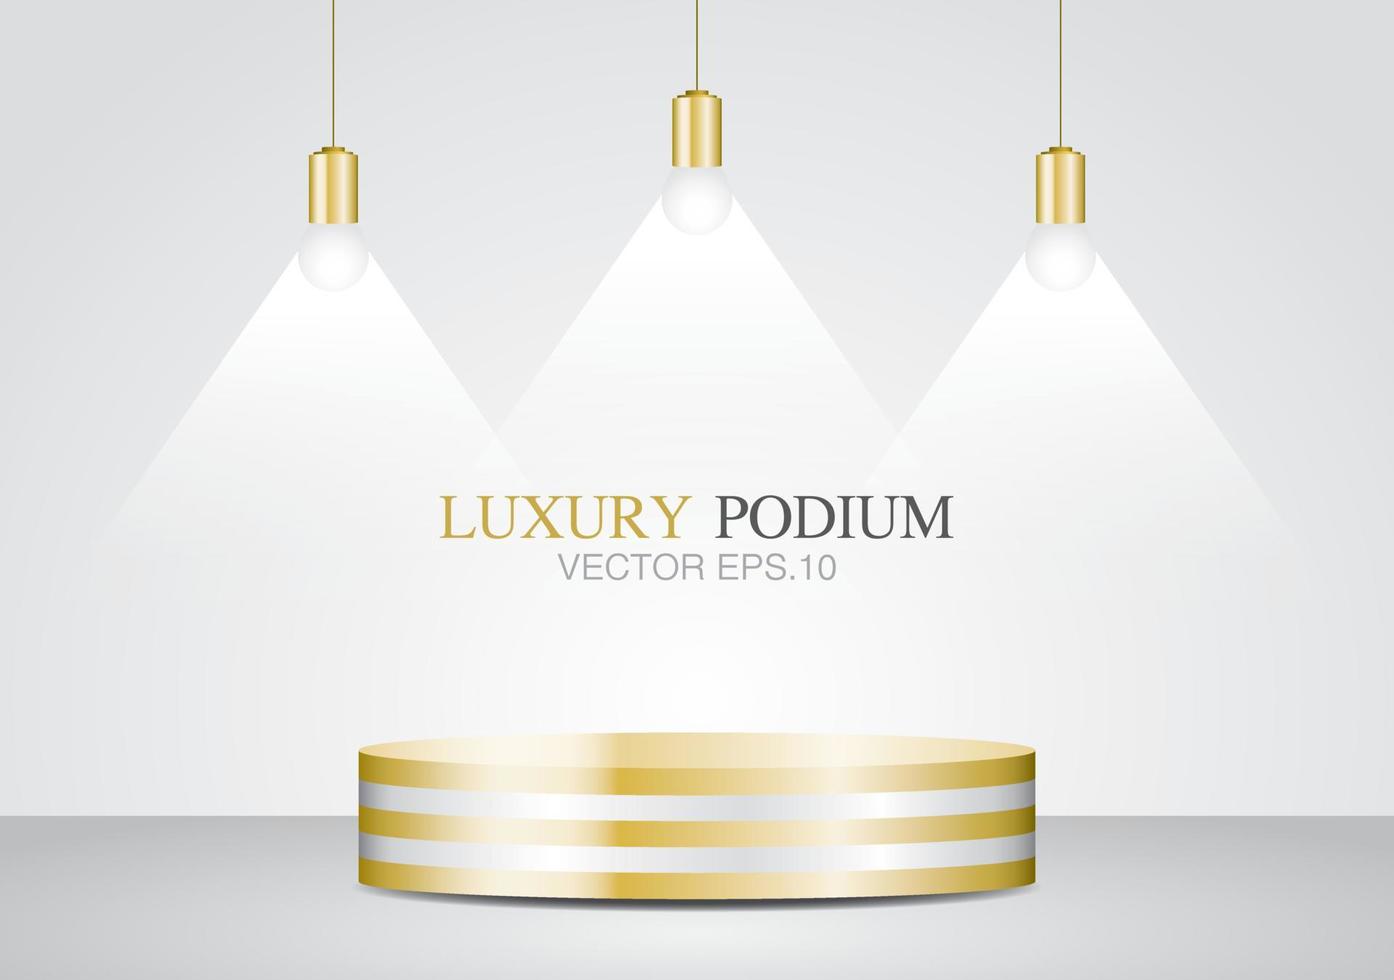 lyx gyllene randig cirkel podium 3d illustration vektor med taklampa för att sätta ditt objekt.